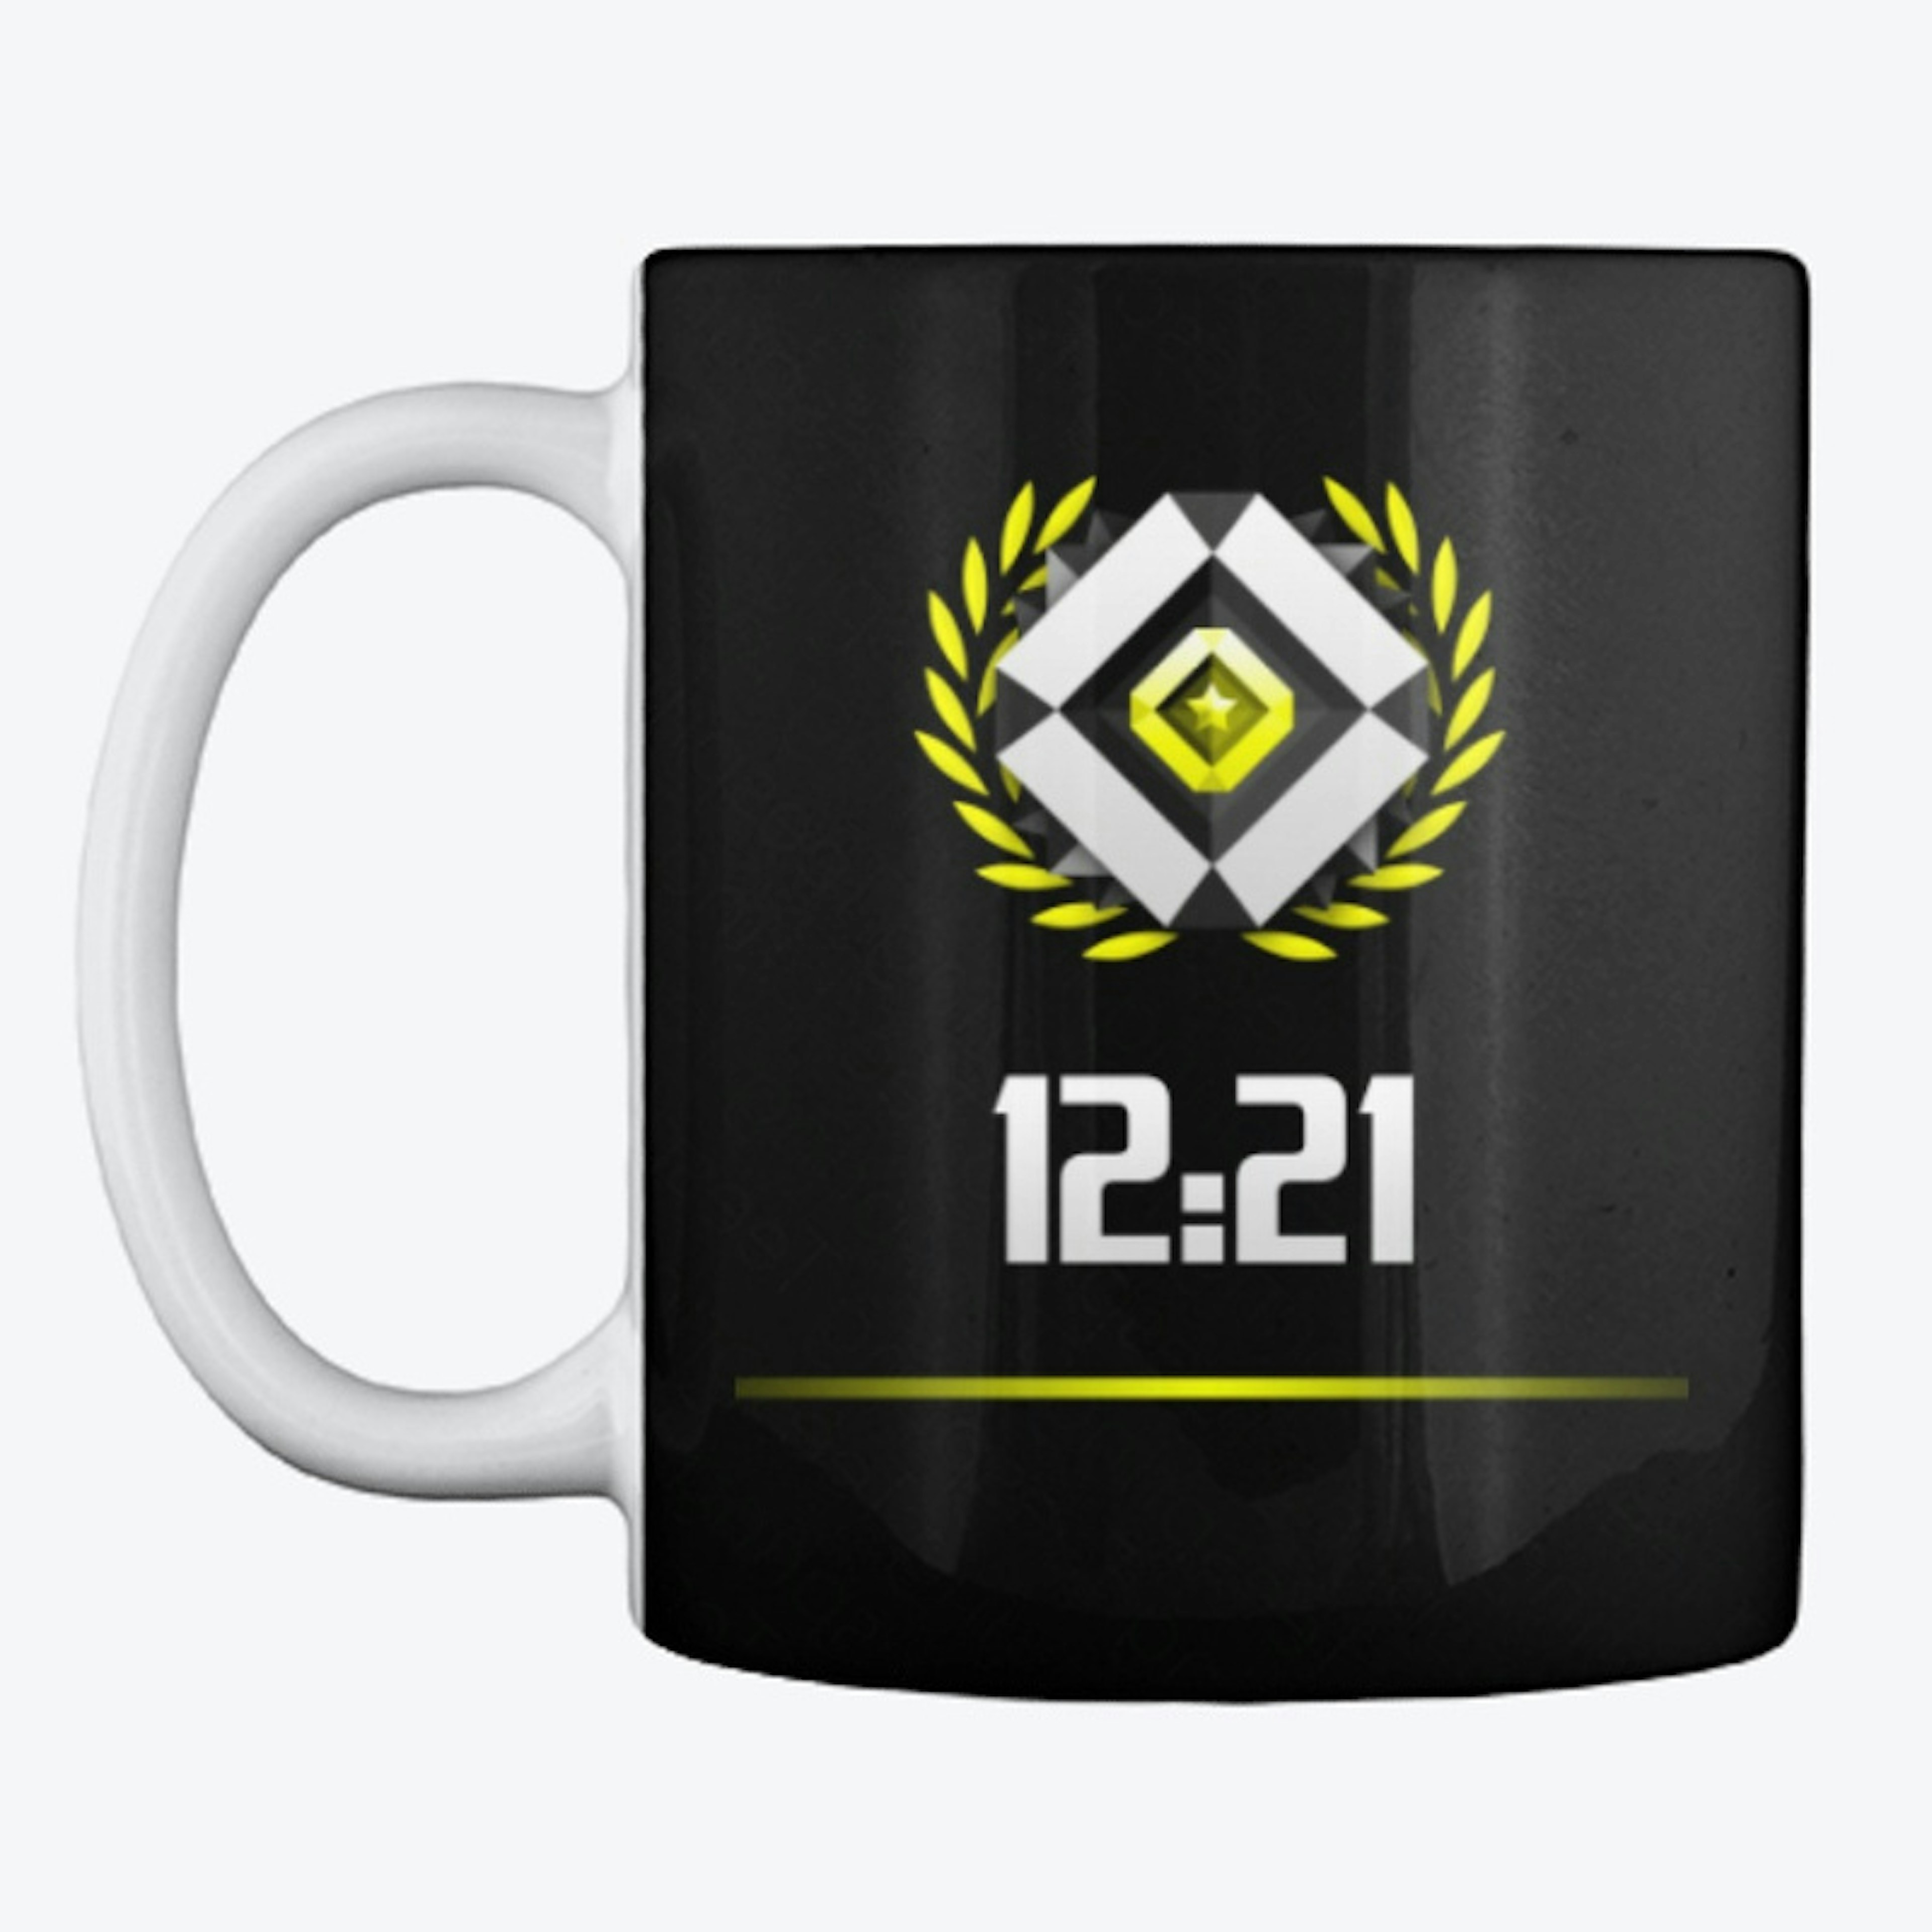 1221 personalised mug - God Badge